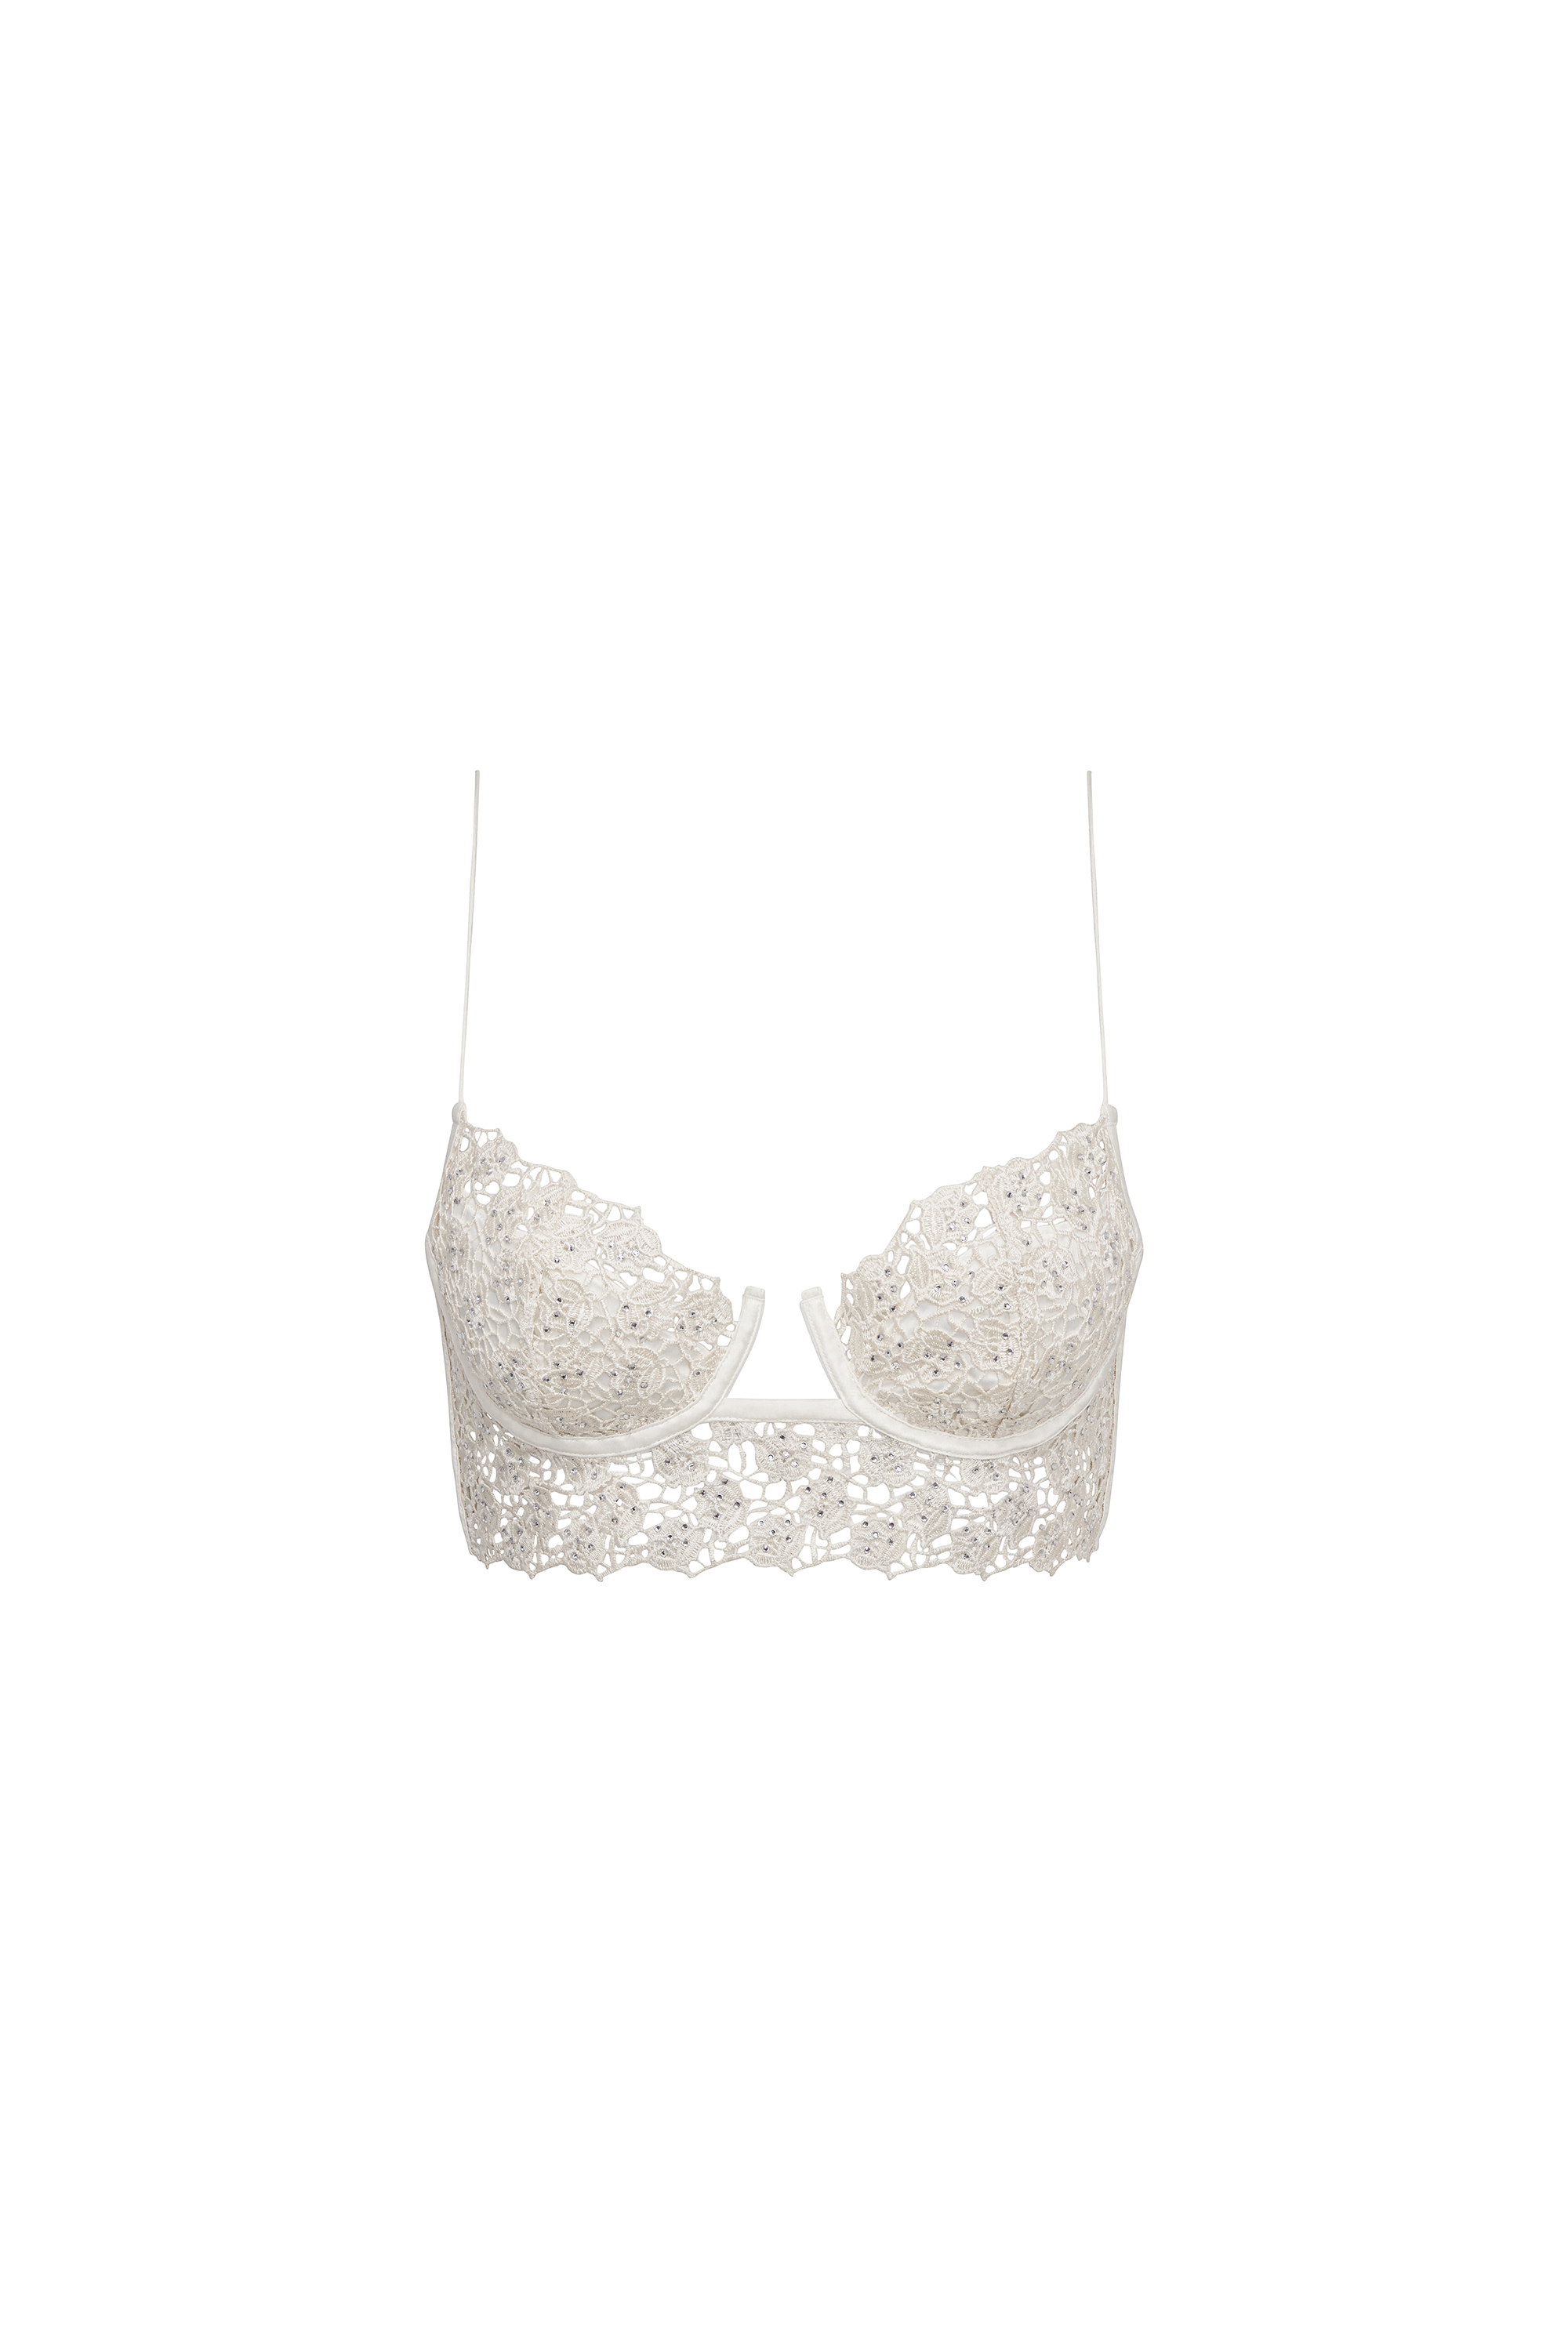 For Love & Lemons Forever Bra- Sizes XS - L - Ivory/White Victoria's Secret